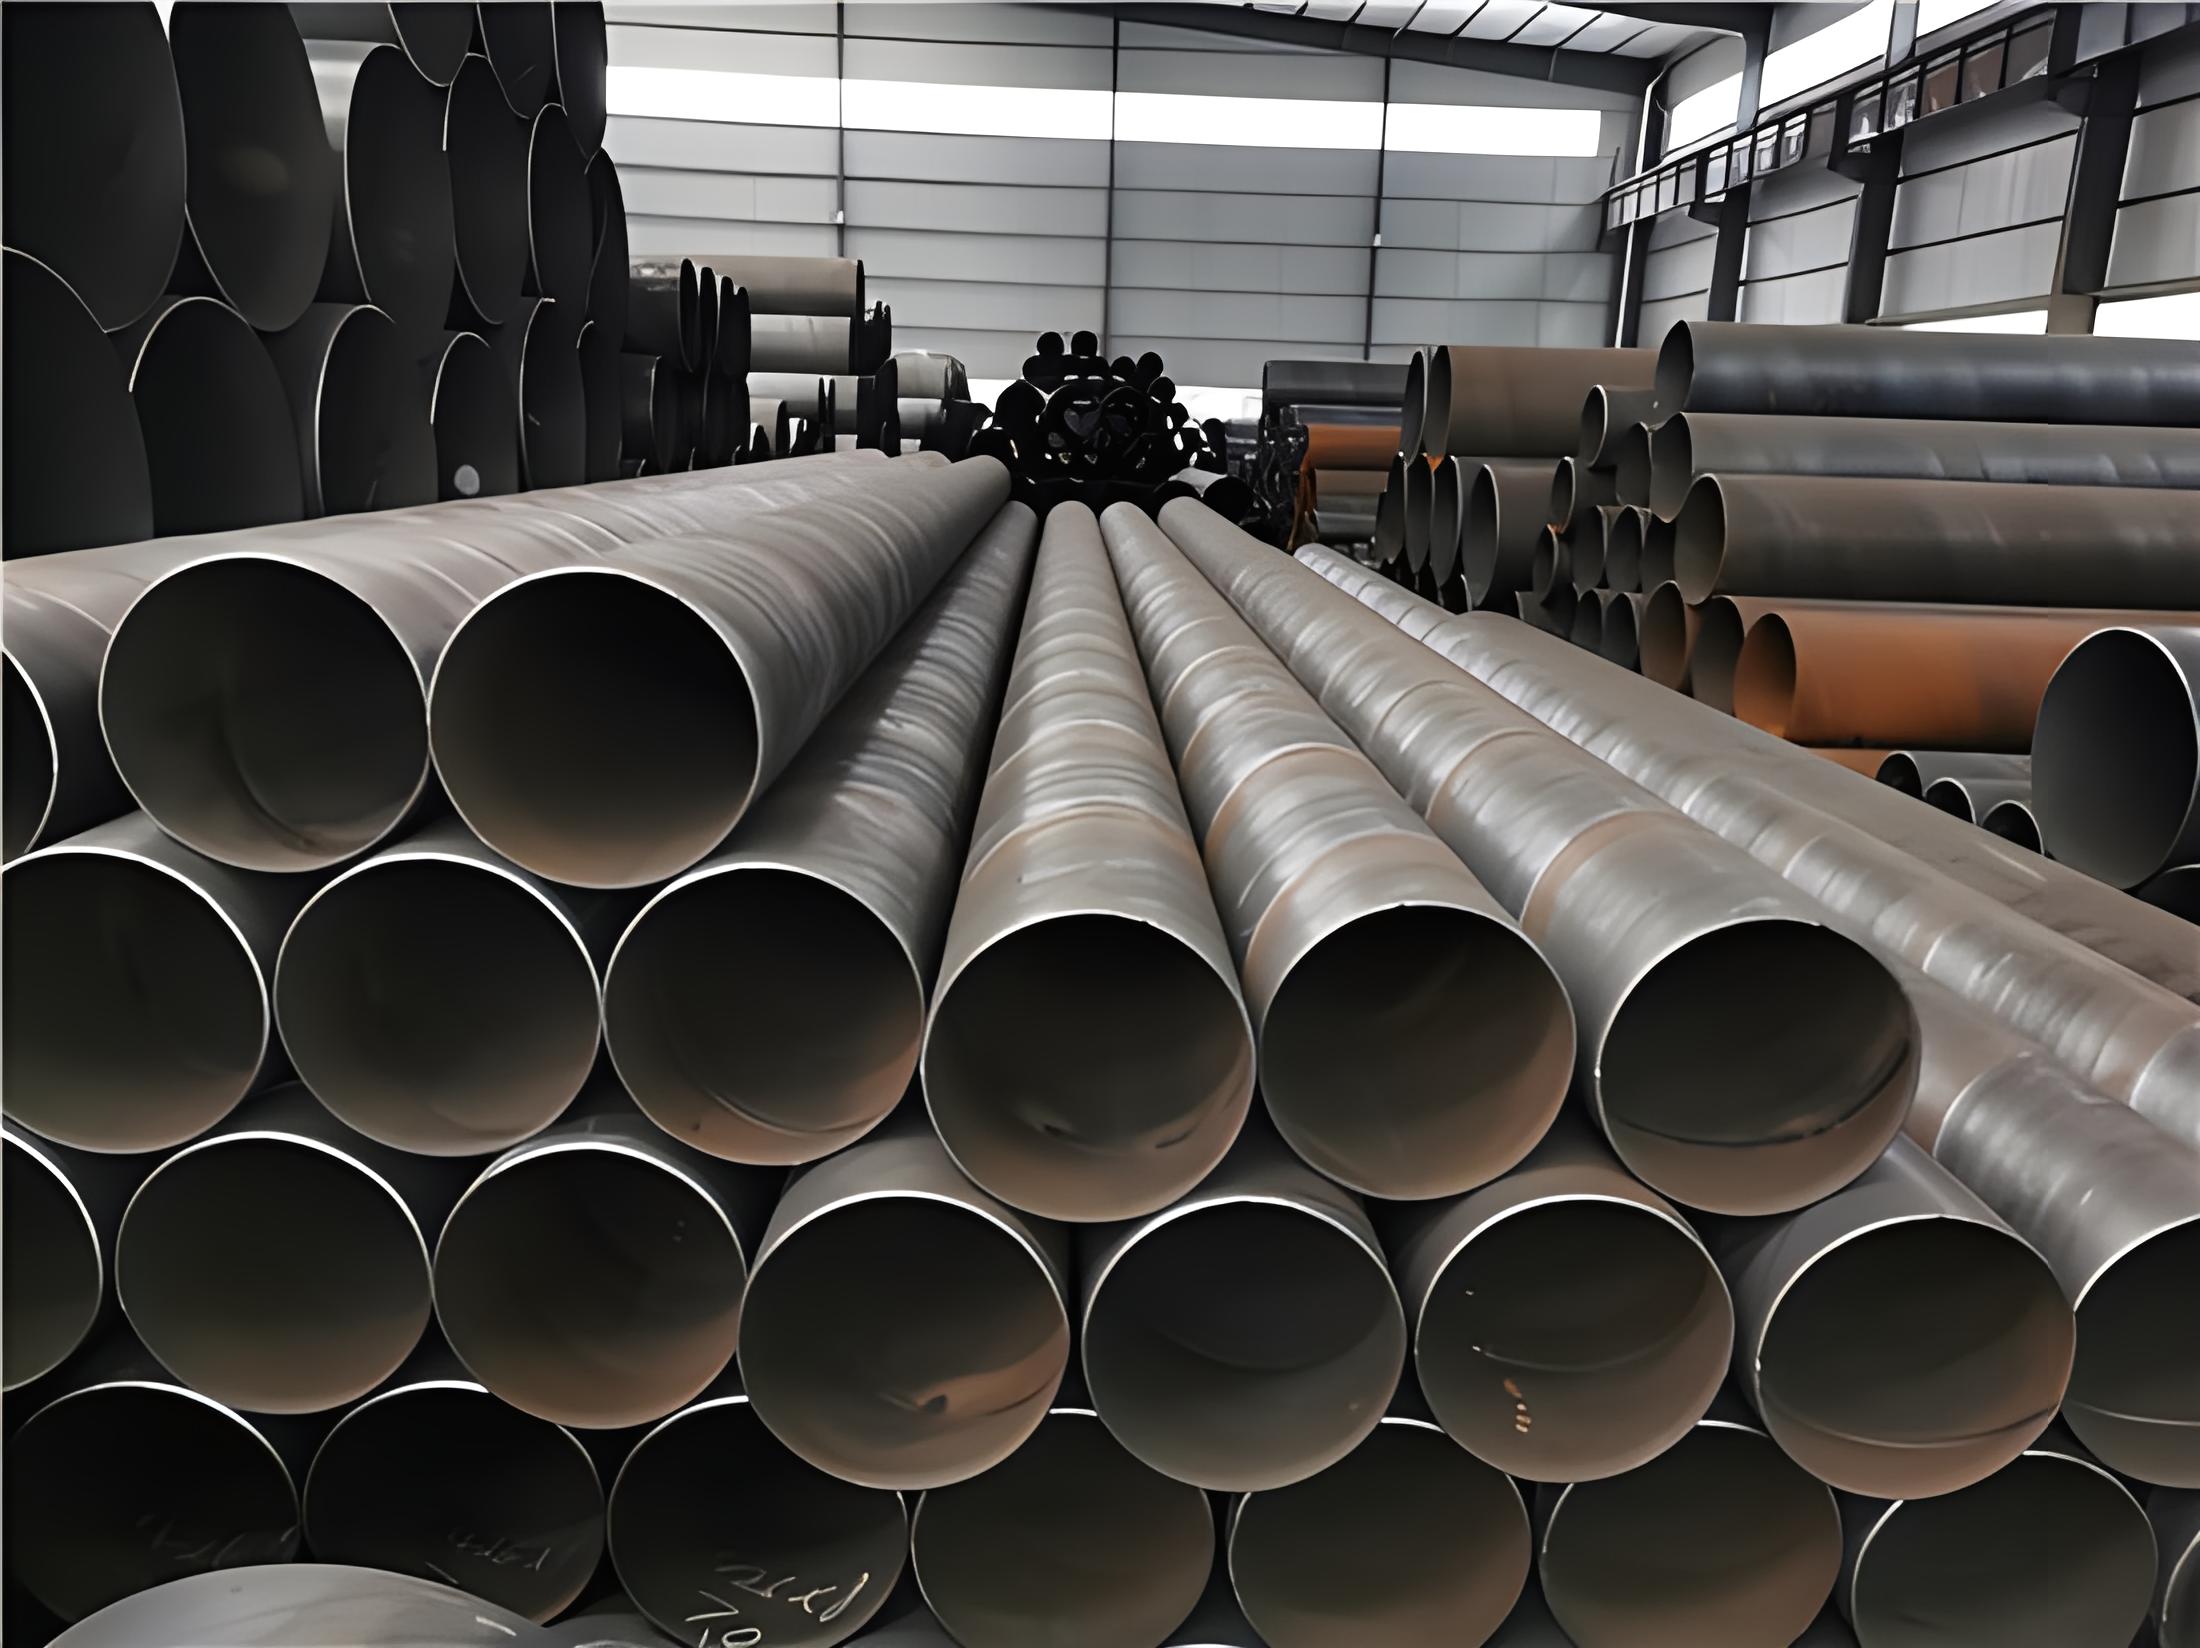 潮州螺旋钢管现代工业建设的坚实基石